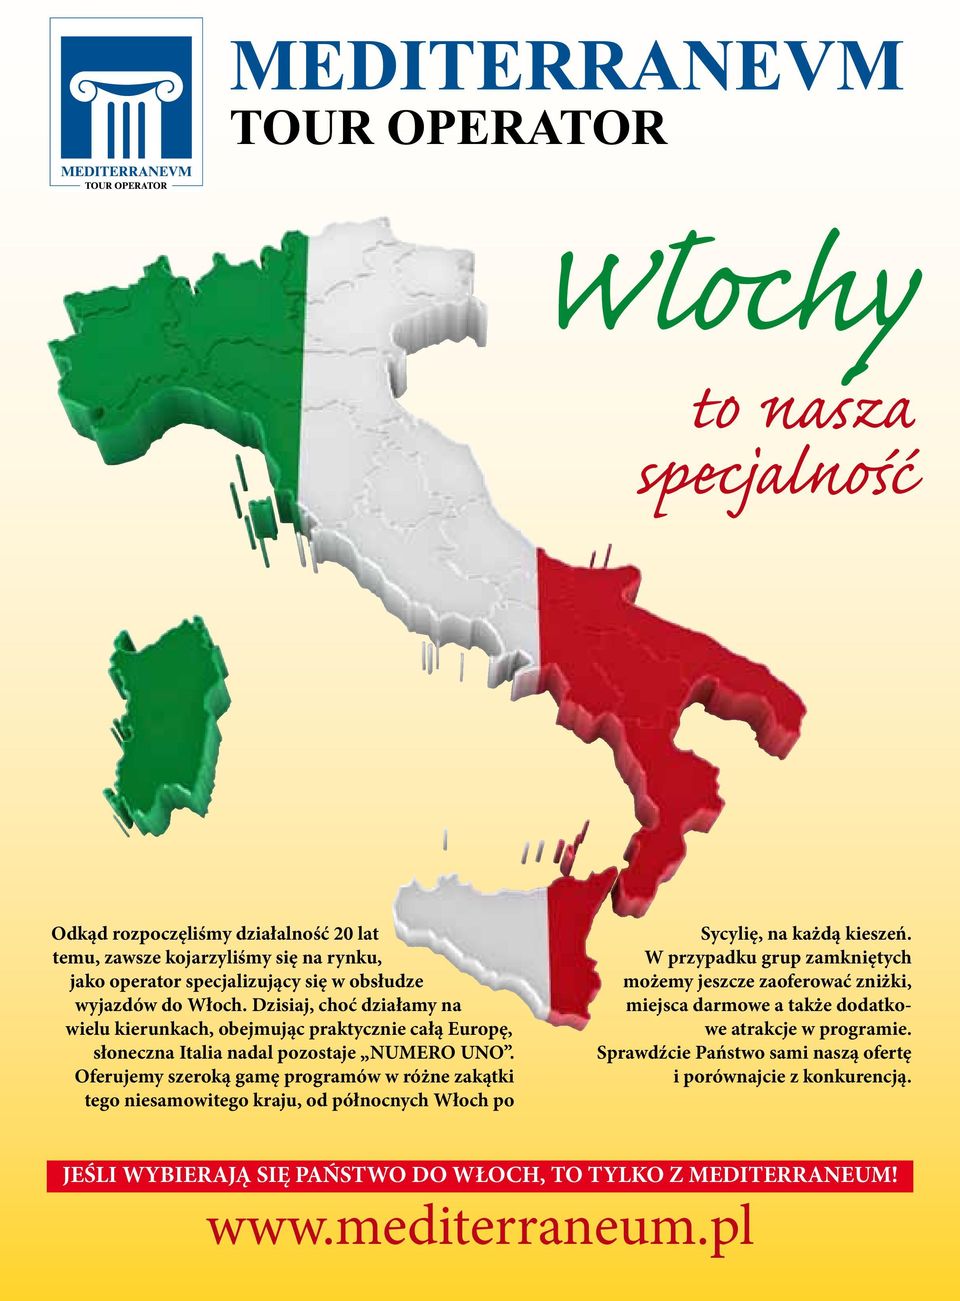 Oferujemy szeroką gamę programów w różne zakątki tego niesamowitego kraju, od północnych Włoch po Sycylię, na każdą kieszeń.